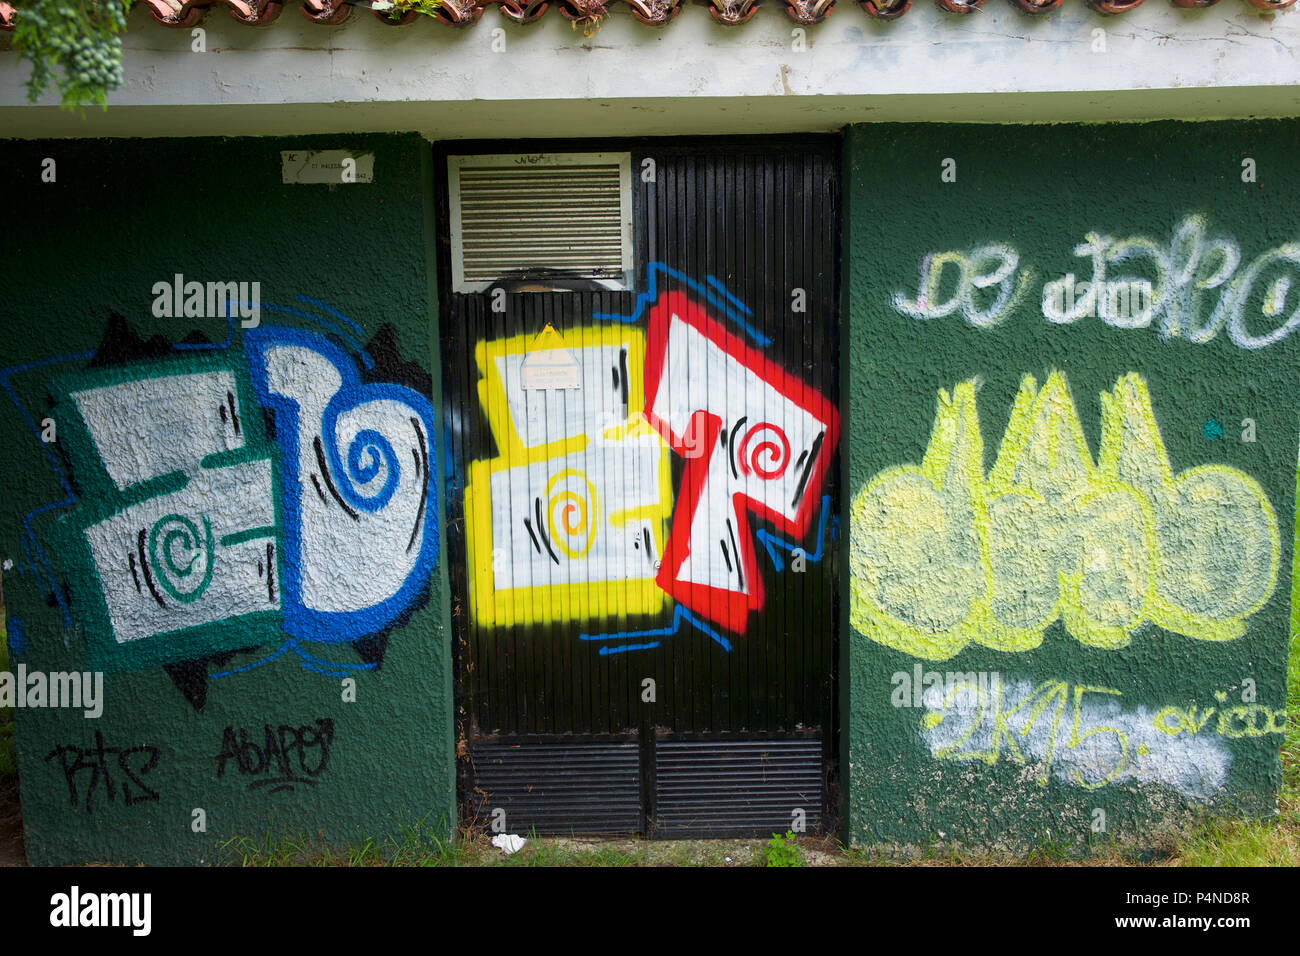 Des graffitis sur un immeuble, Espagne Banque D'Images